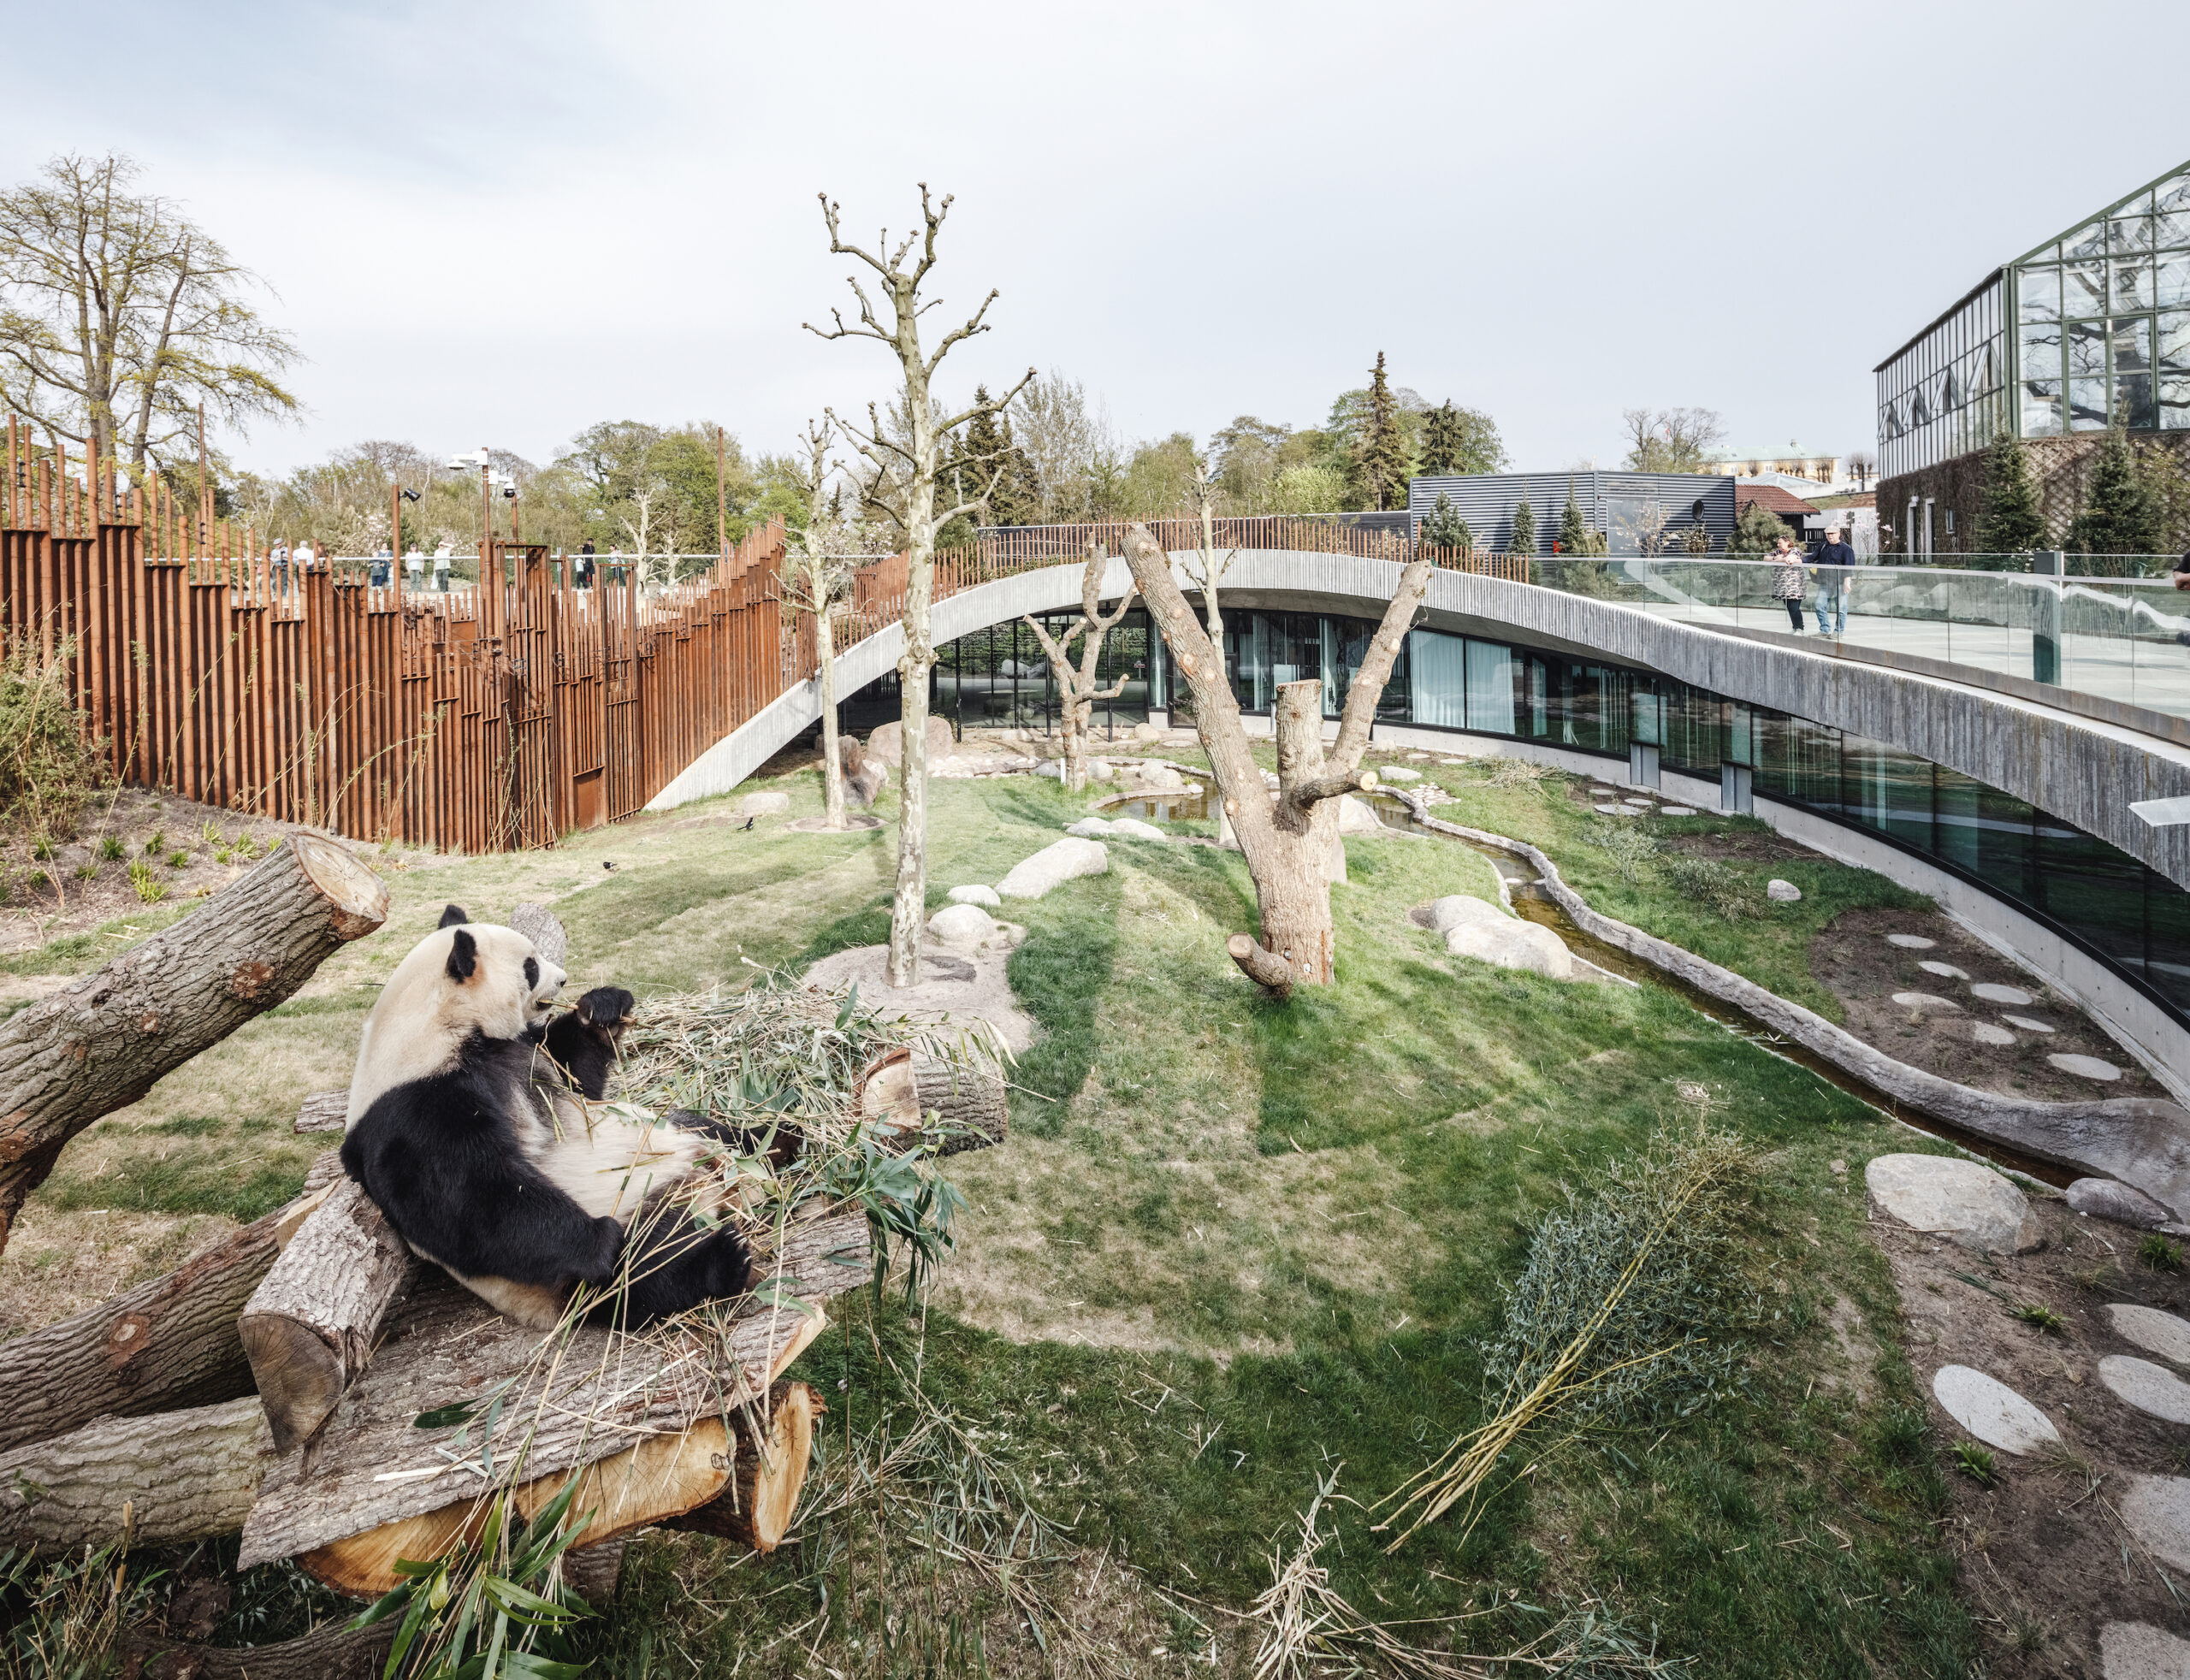 Panda House by Bjarke Ingels Group (BIG), Copenhagen